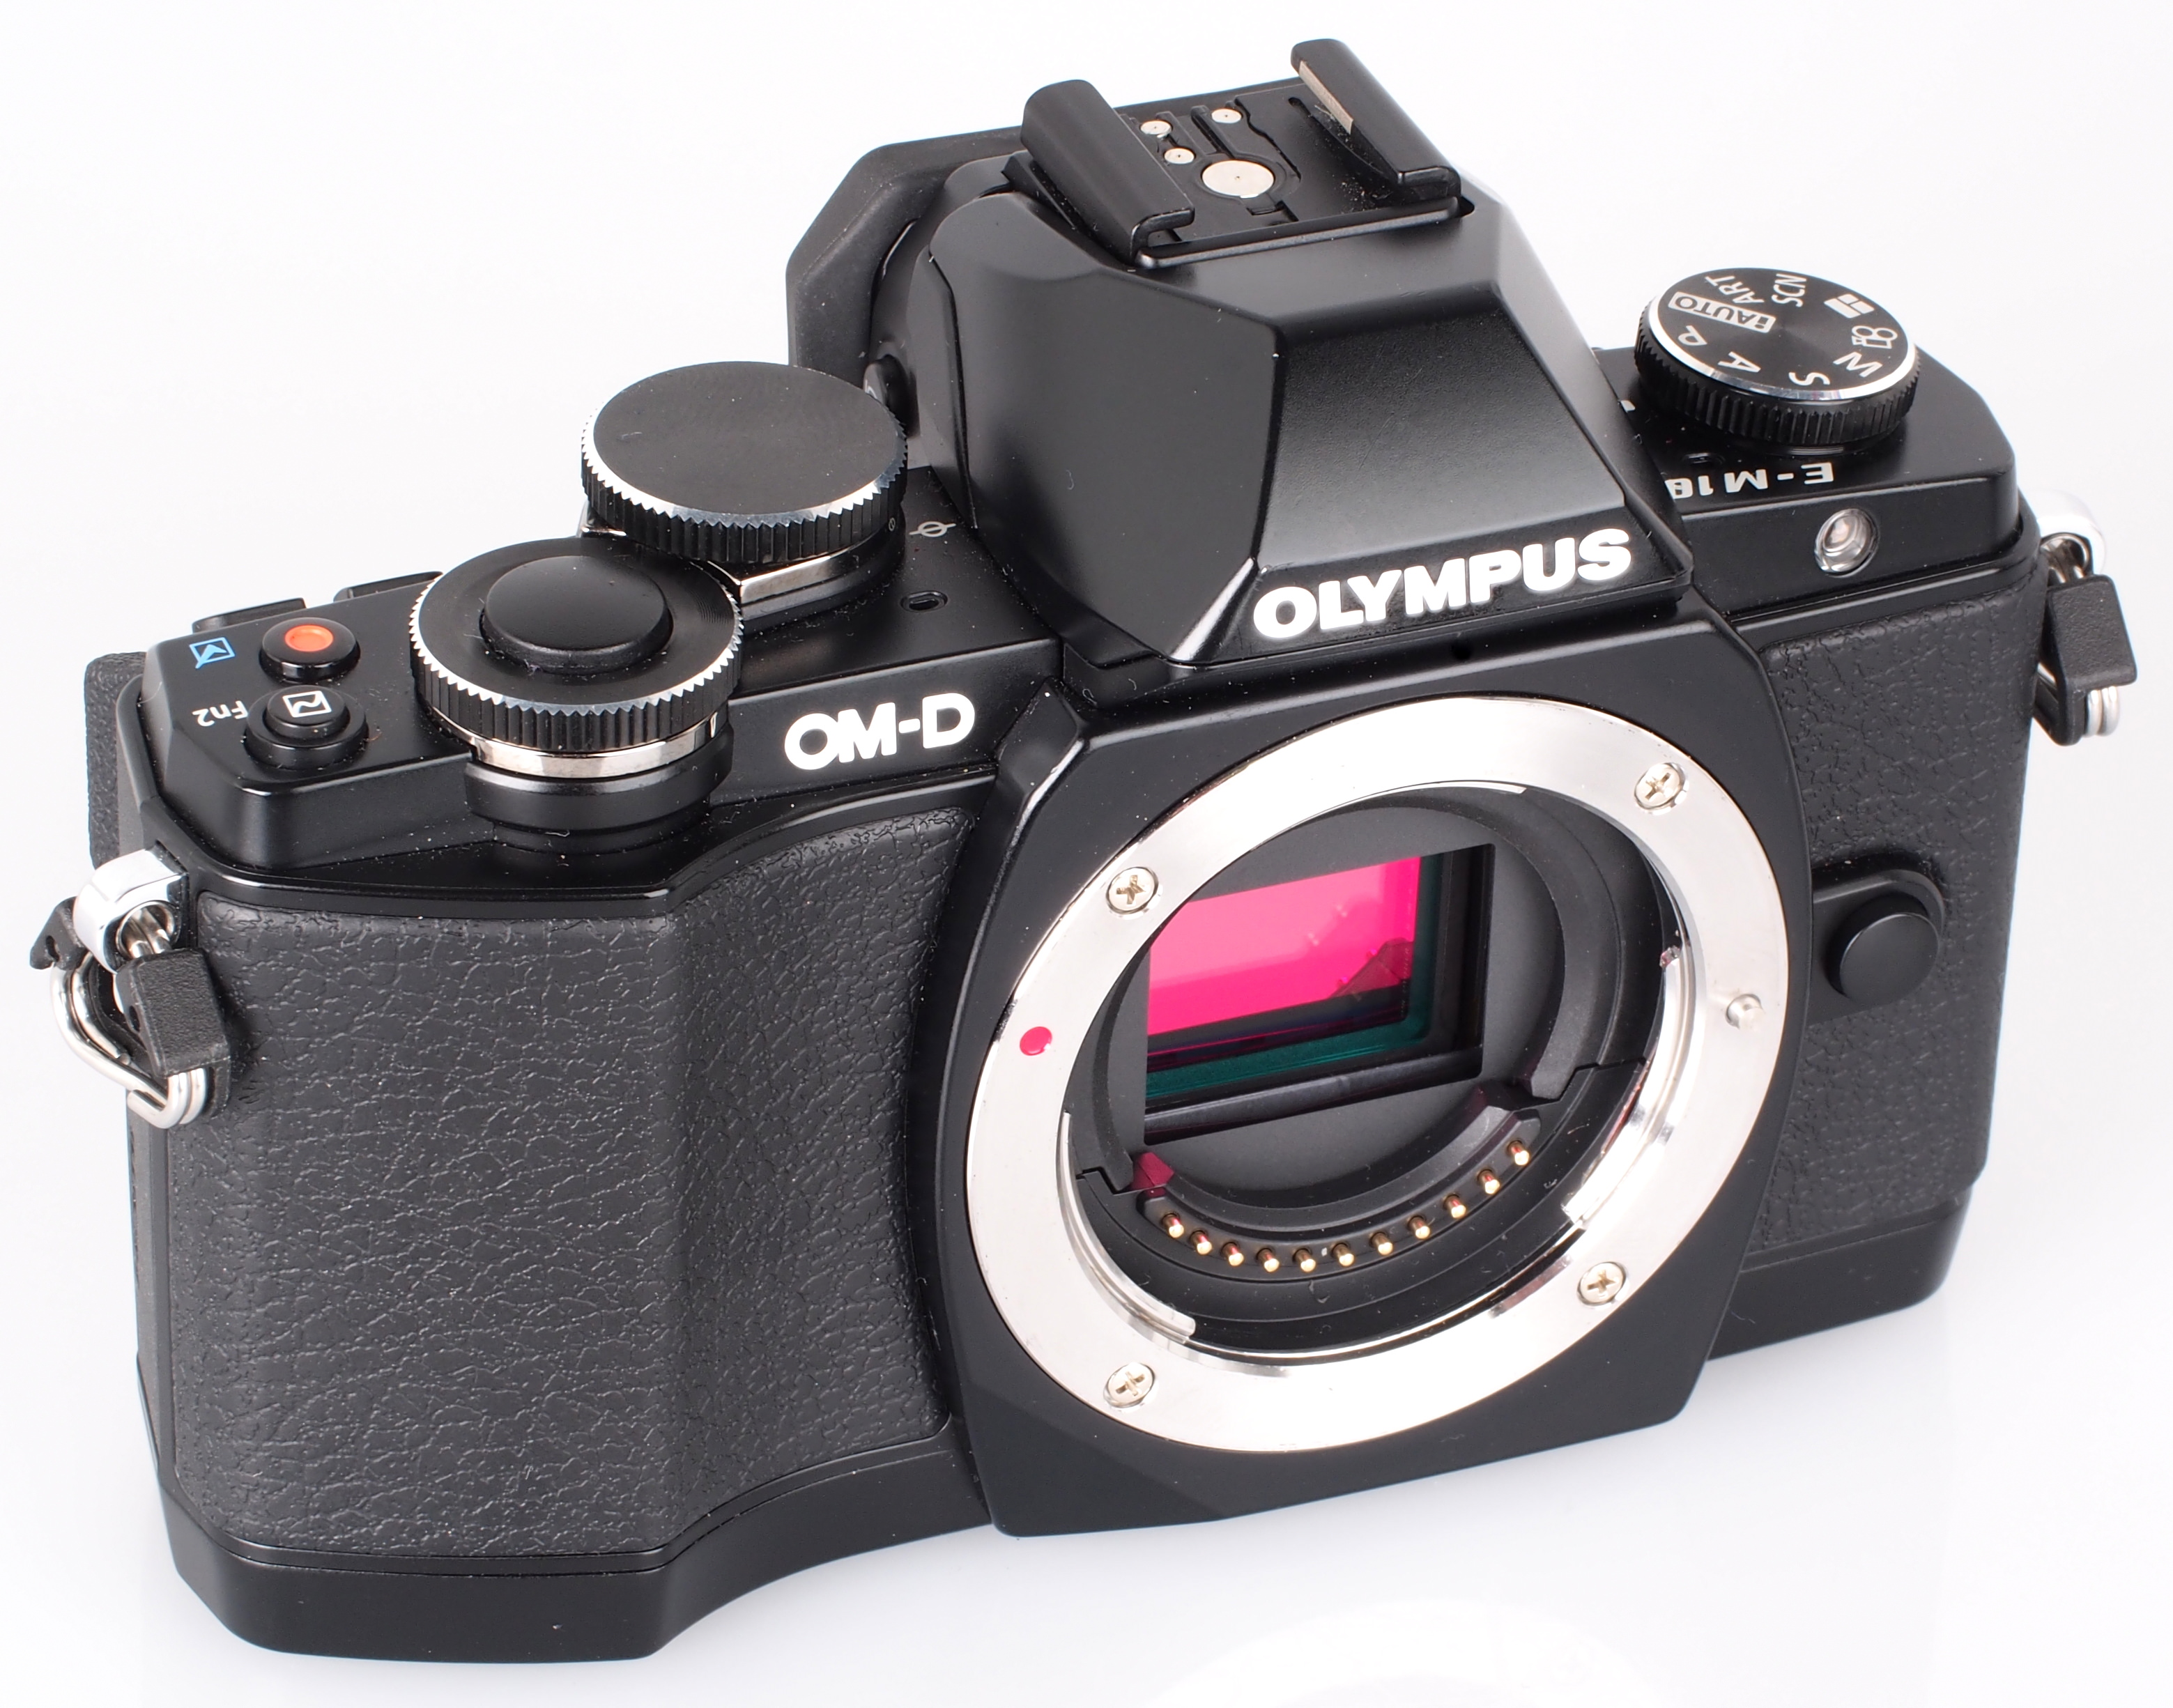 65a55aacf40df Câmera Olympus Om-d E-m10 Iii: Ficha Técnica, Onde Comprar, Preço E Principais Informações